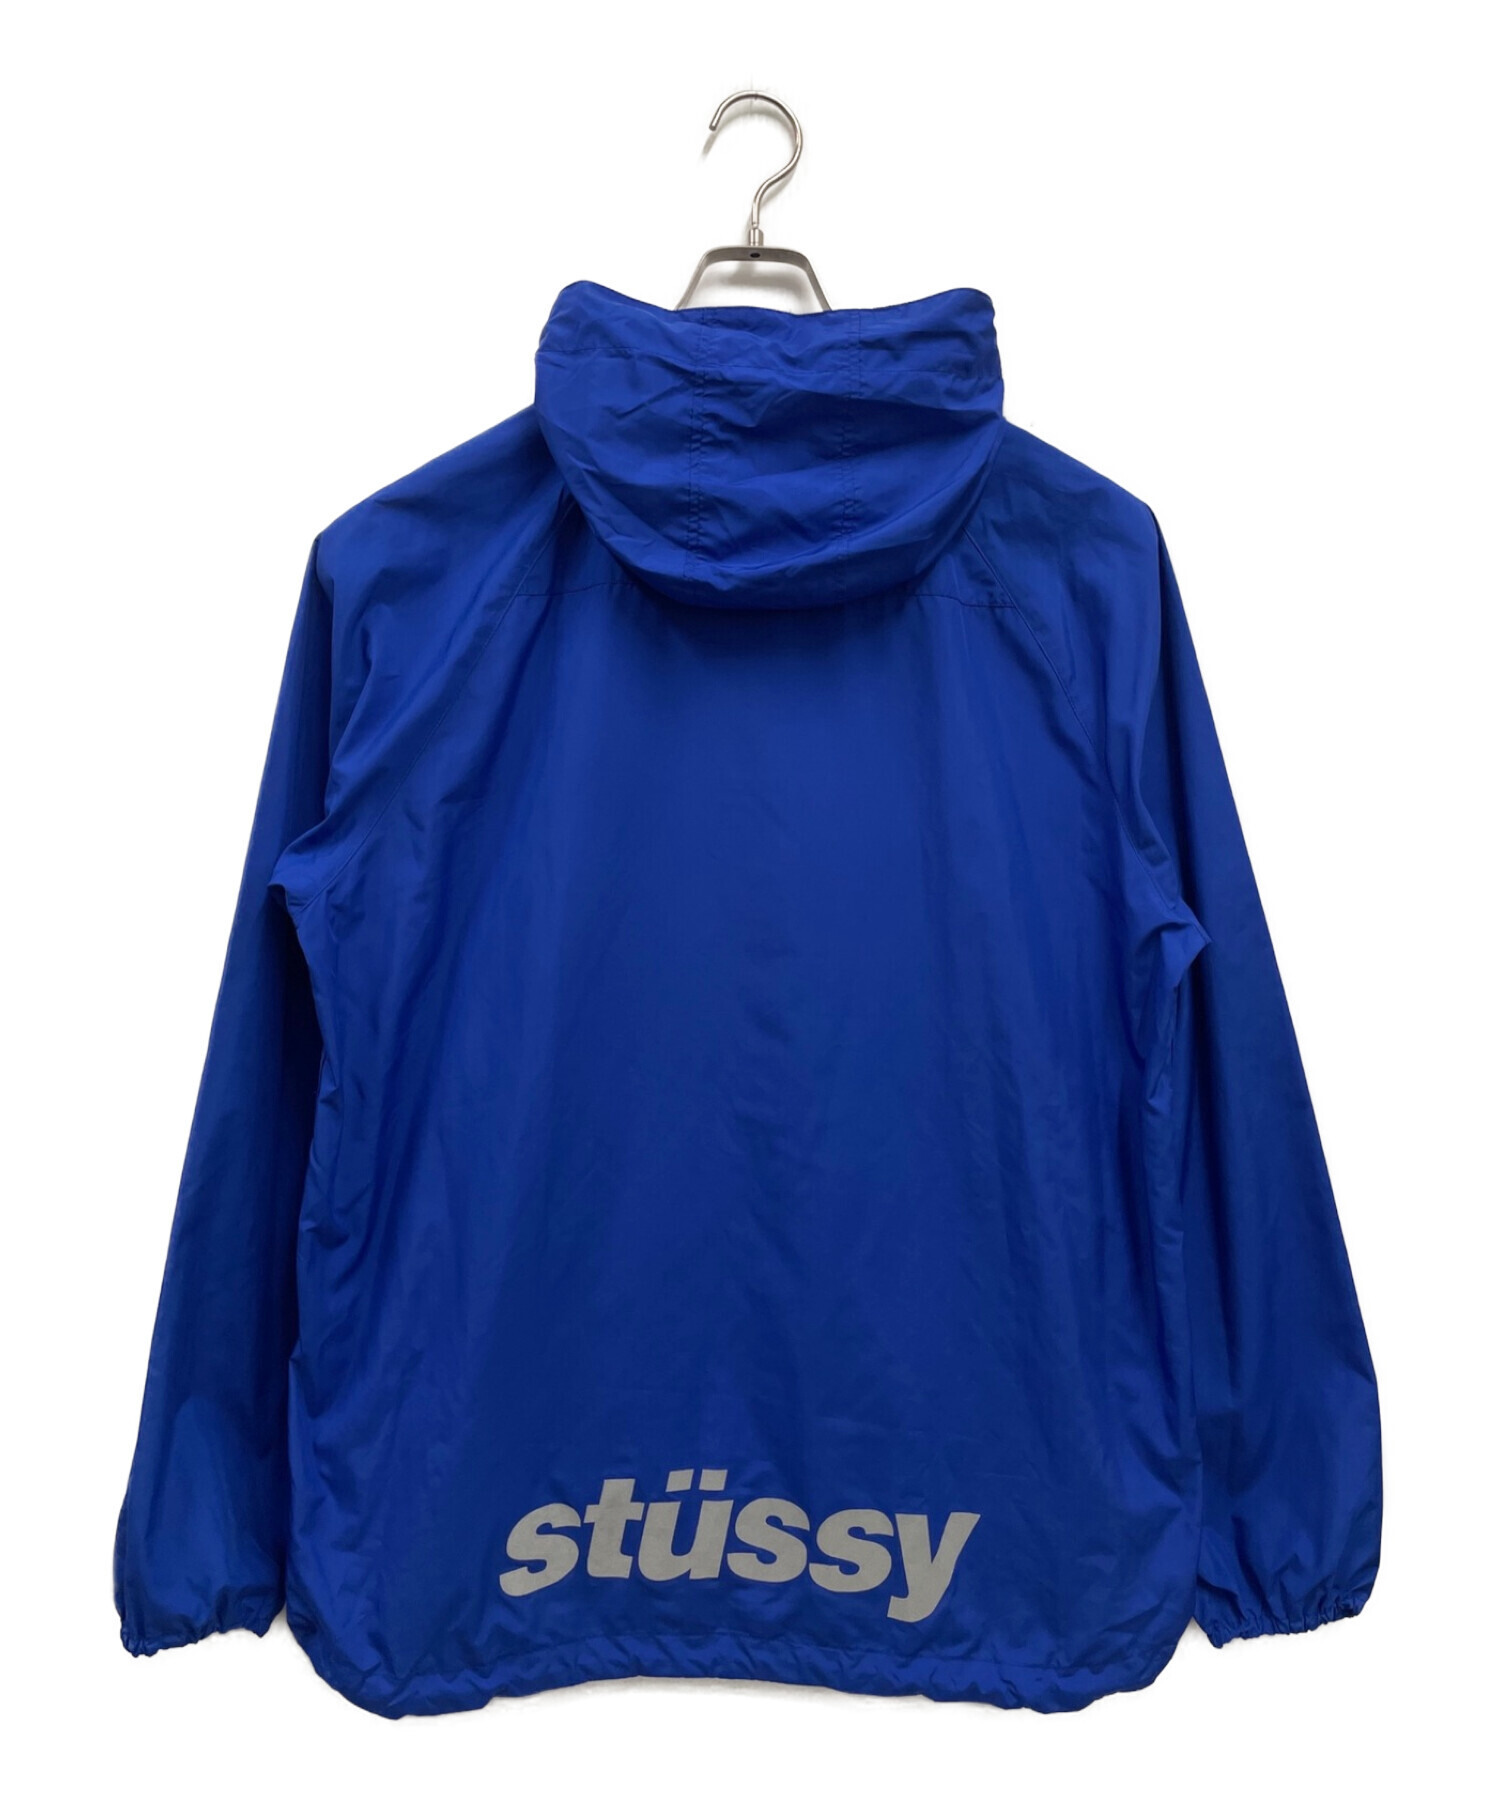 stussy (ステューシー) ナイロンジャケットマウンテンパーカー ブルー サイズ:L